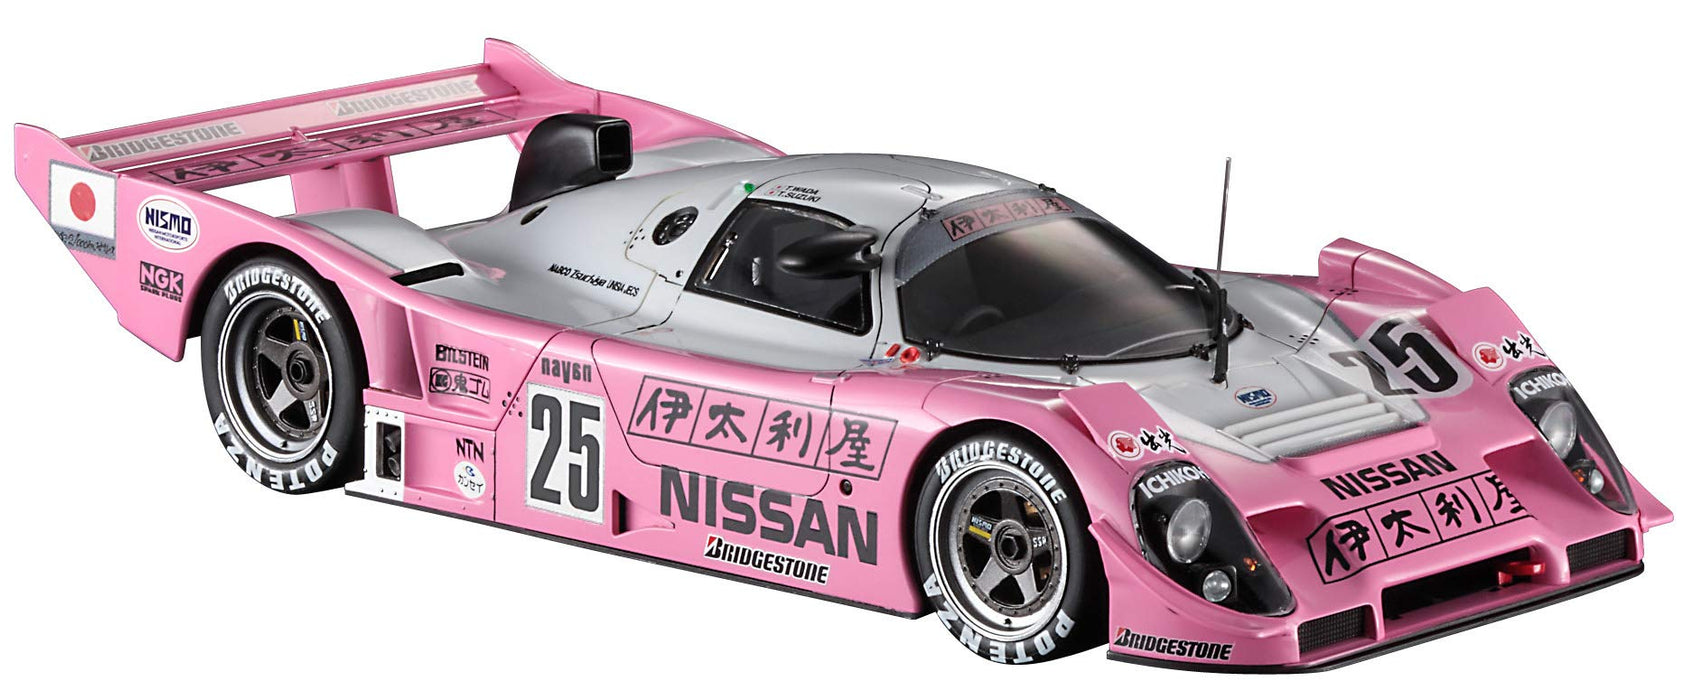 Hasegawa 1/24 Nissan Italya (R92Cp) 1993 Suzuka 1000 km Rennen Sieger Maßstab Rennwagen